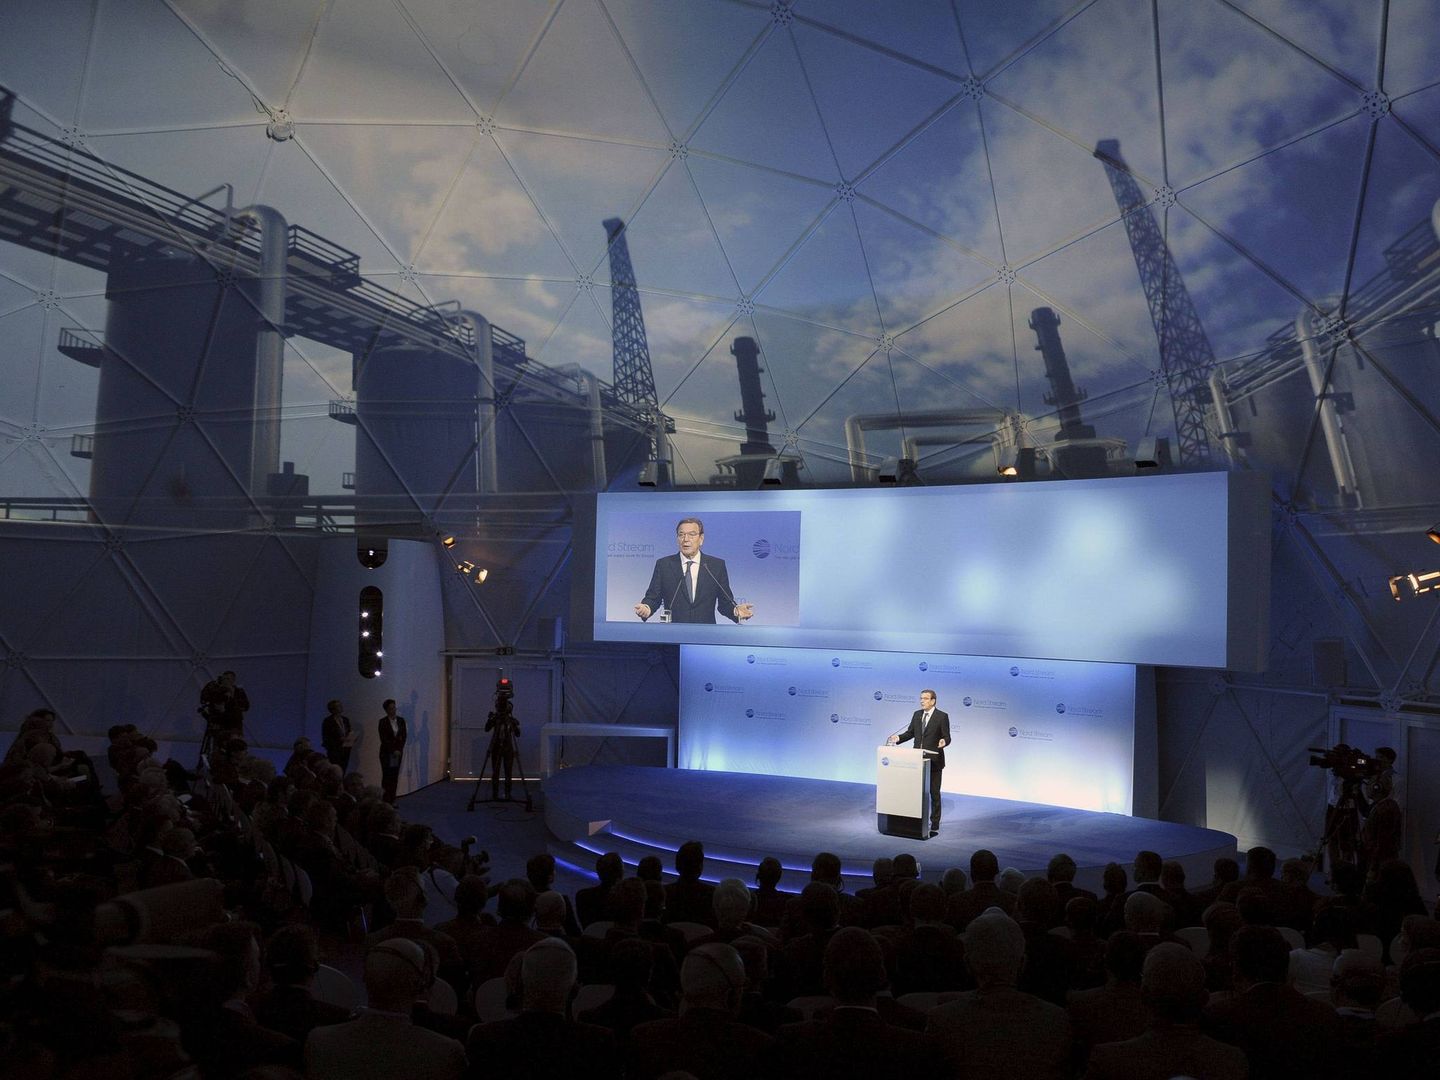 El excanciller alemán Gerhard Schröder pronuncia un discurso durante la inauguración del segundo hilo del gasoducto ruso-alemán Nord Stream en la estación de compresión de Portovaya a las afueras de Vyborg, Rusia, el 8 de octubre de 2012. (EFE)